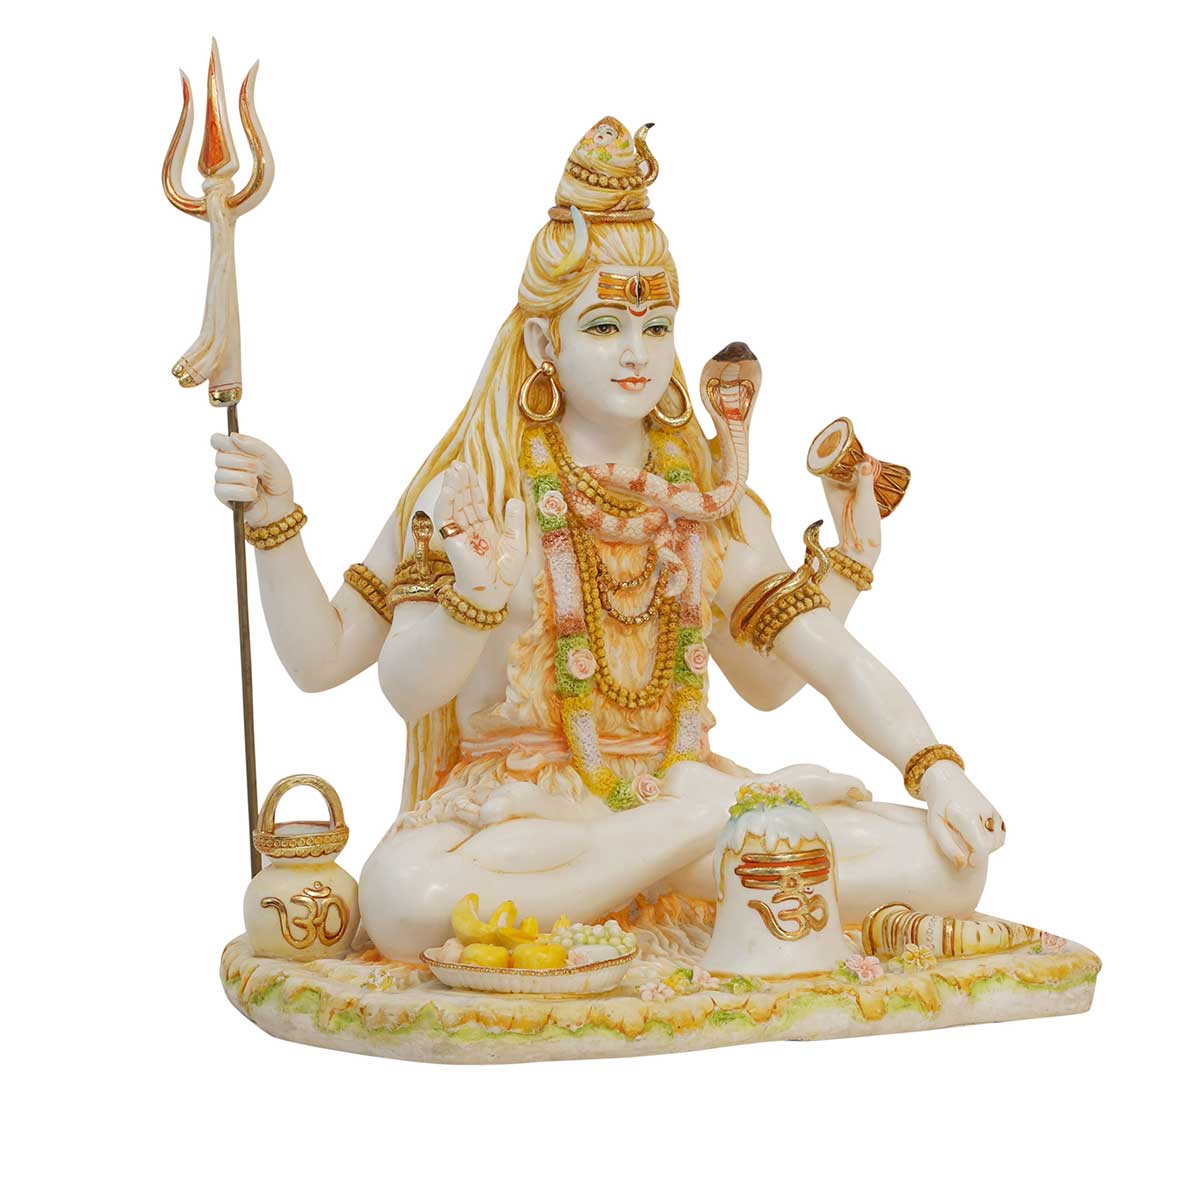 Lord Shiva | Lord shiva, Shiva, Lord shiva pics